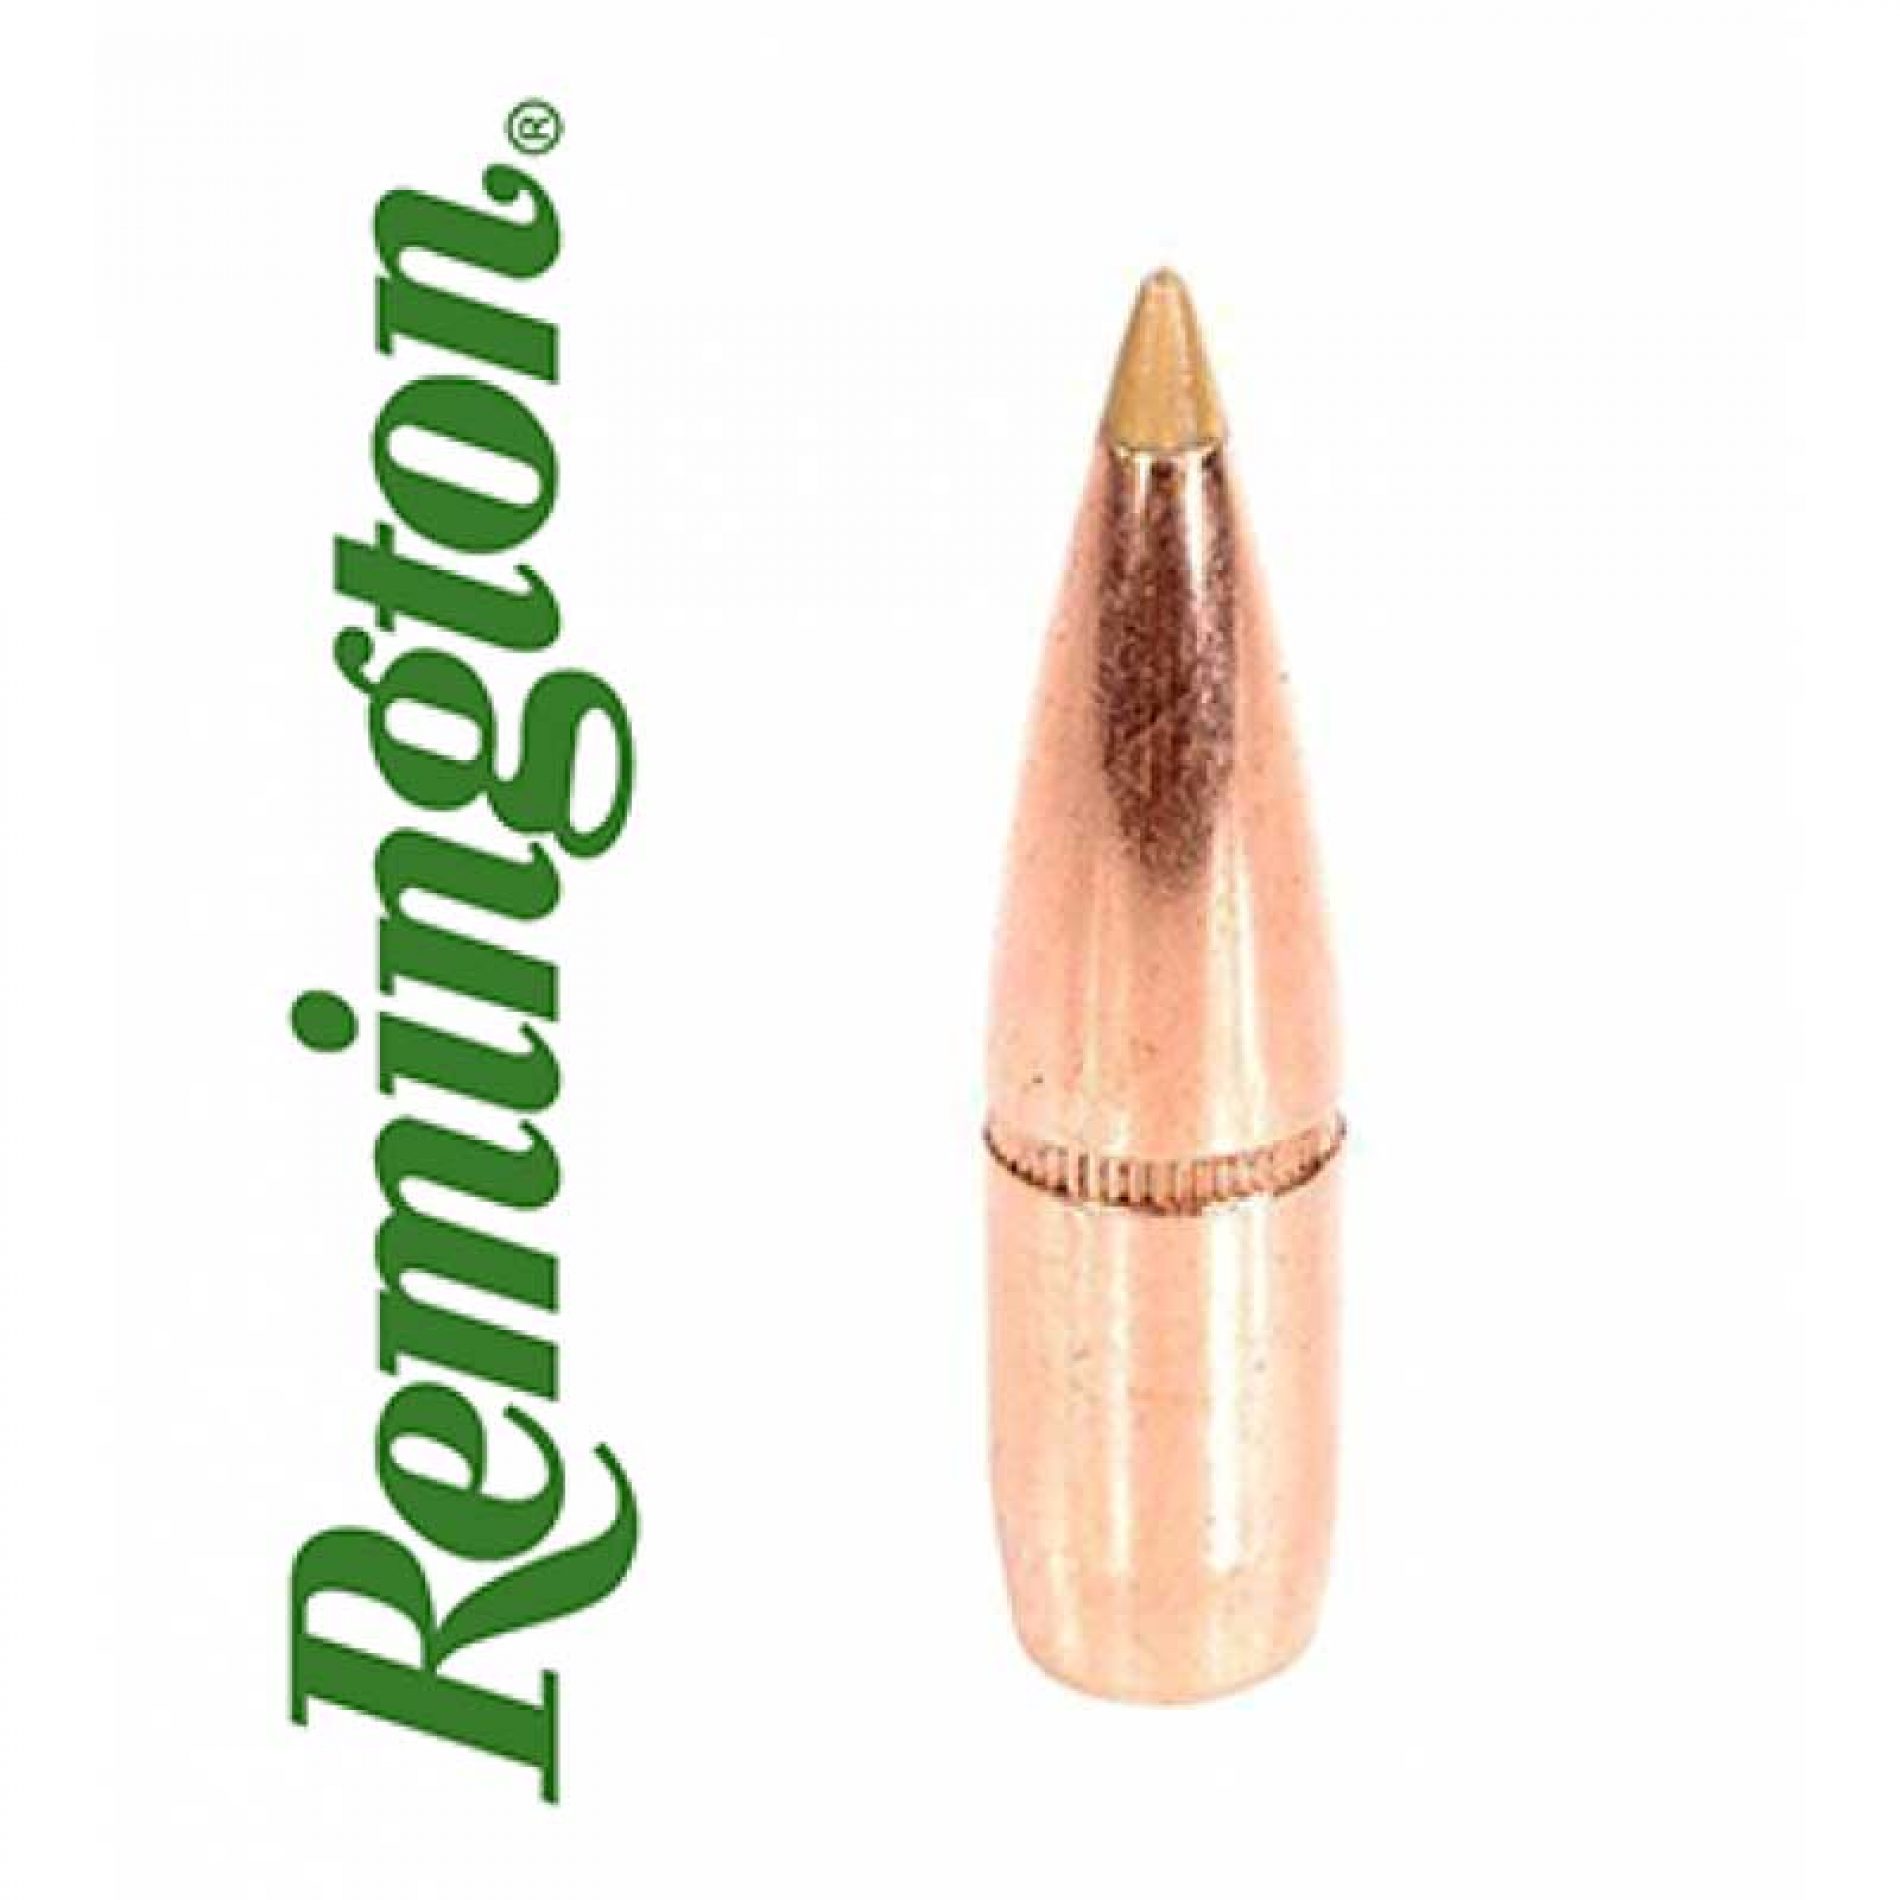 Munición ACCUTIP de Remington, la fiabilidad precisa